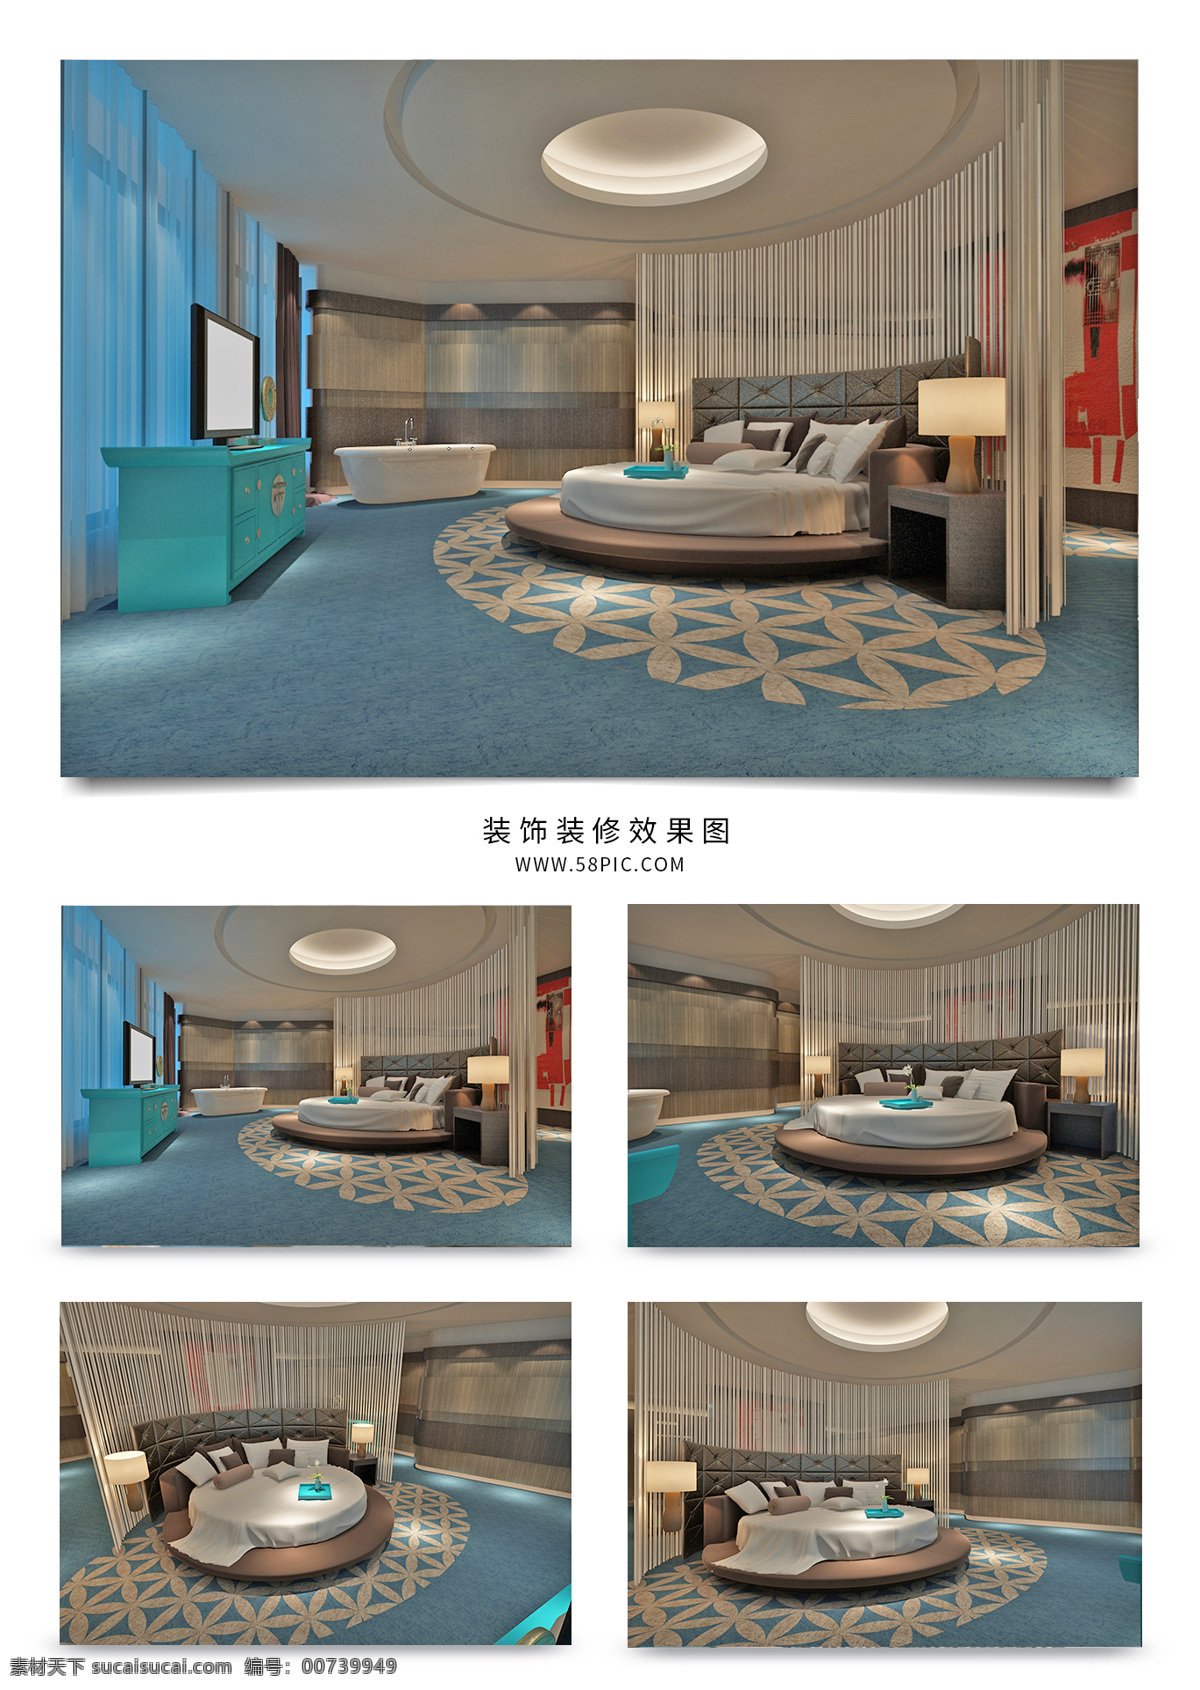 现代 风 酒店 总统 套房 效果图 电视 蓝色 地毯 柜子 模型 吸顶灯 3dmax